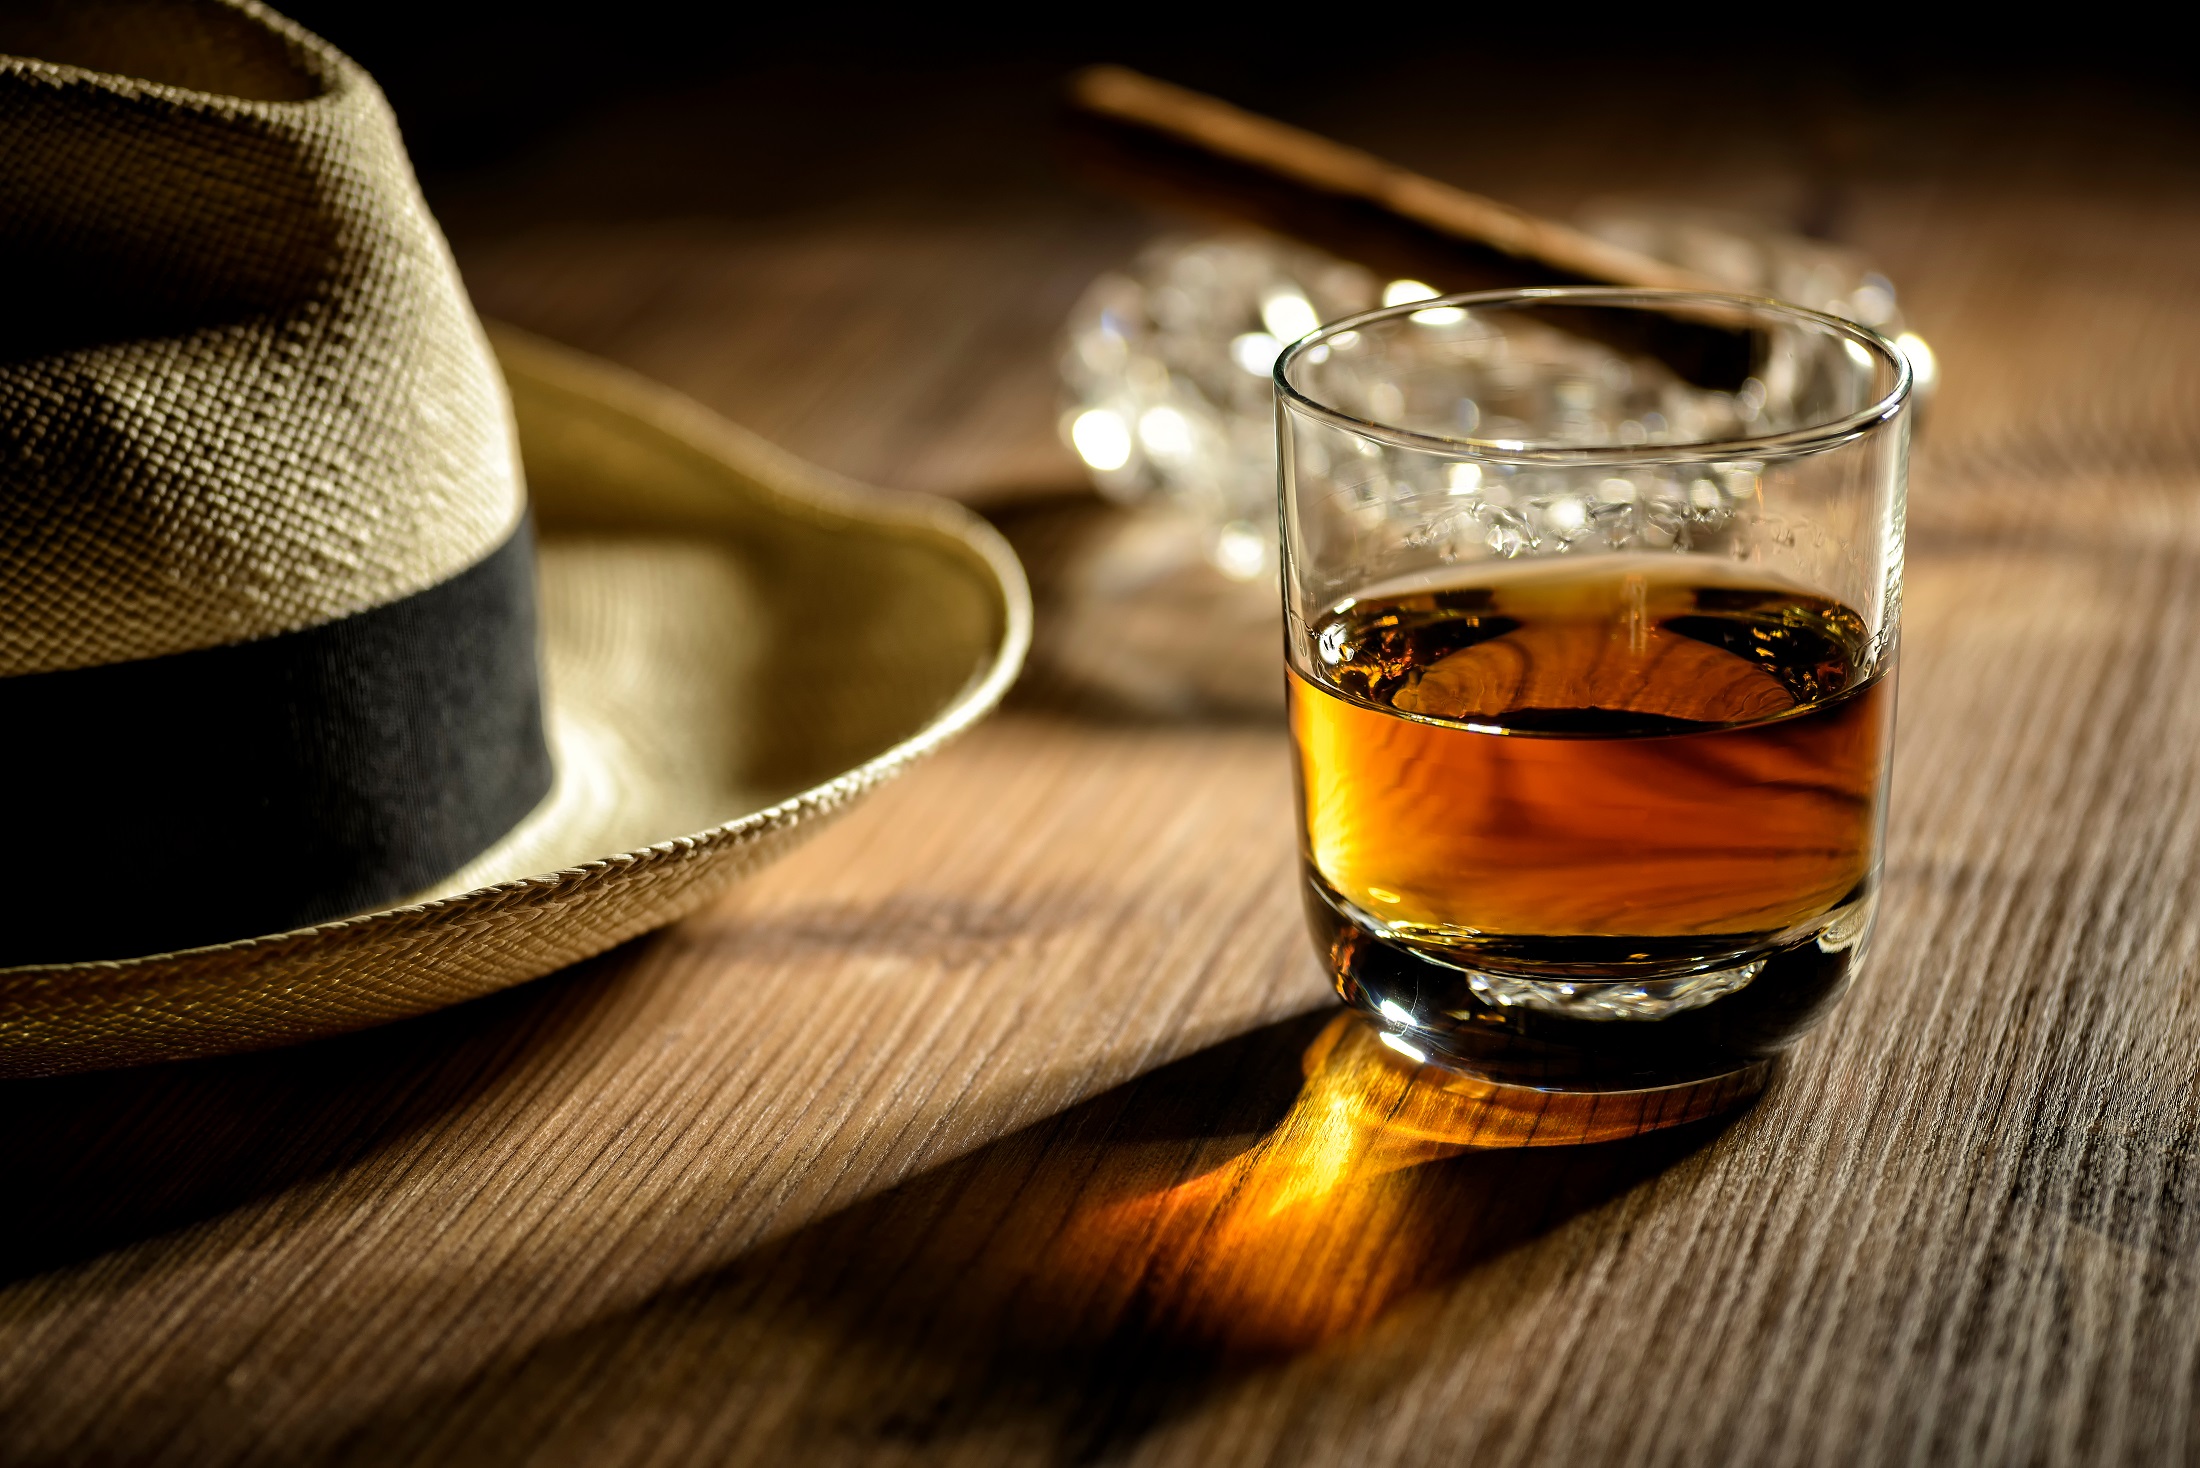 glas rumu, cygara i kapelusz panamski w barze na Kubie